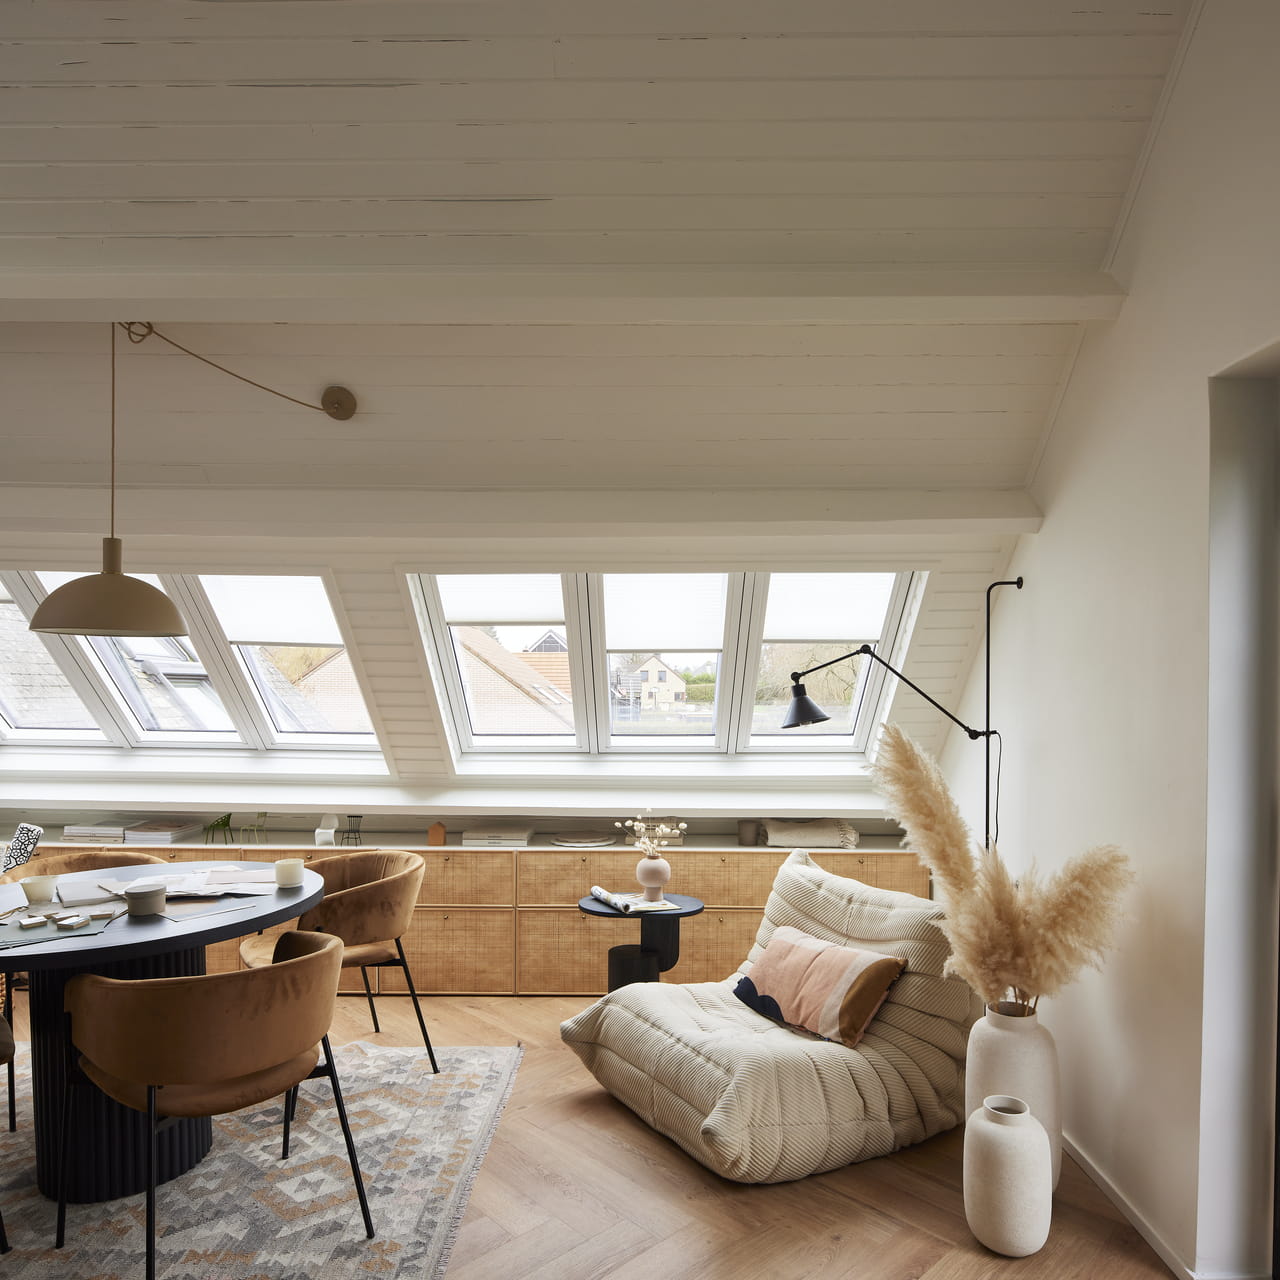 Ljus vindsvardagsrum med VELUX-fönster, trä-tak och moderna möbler.